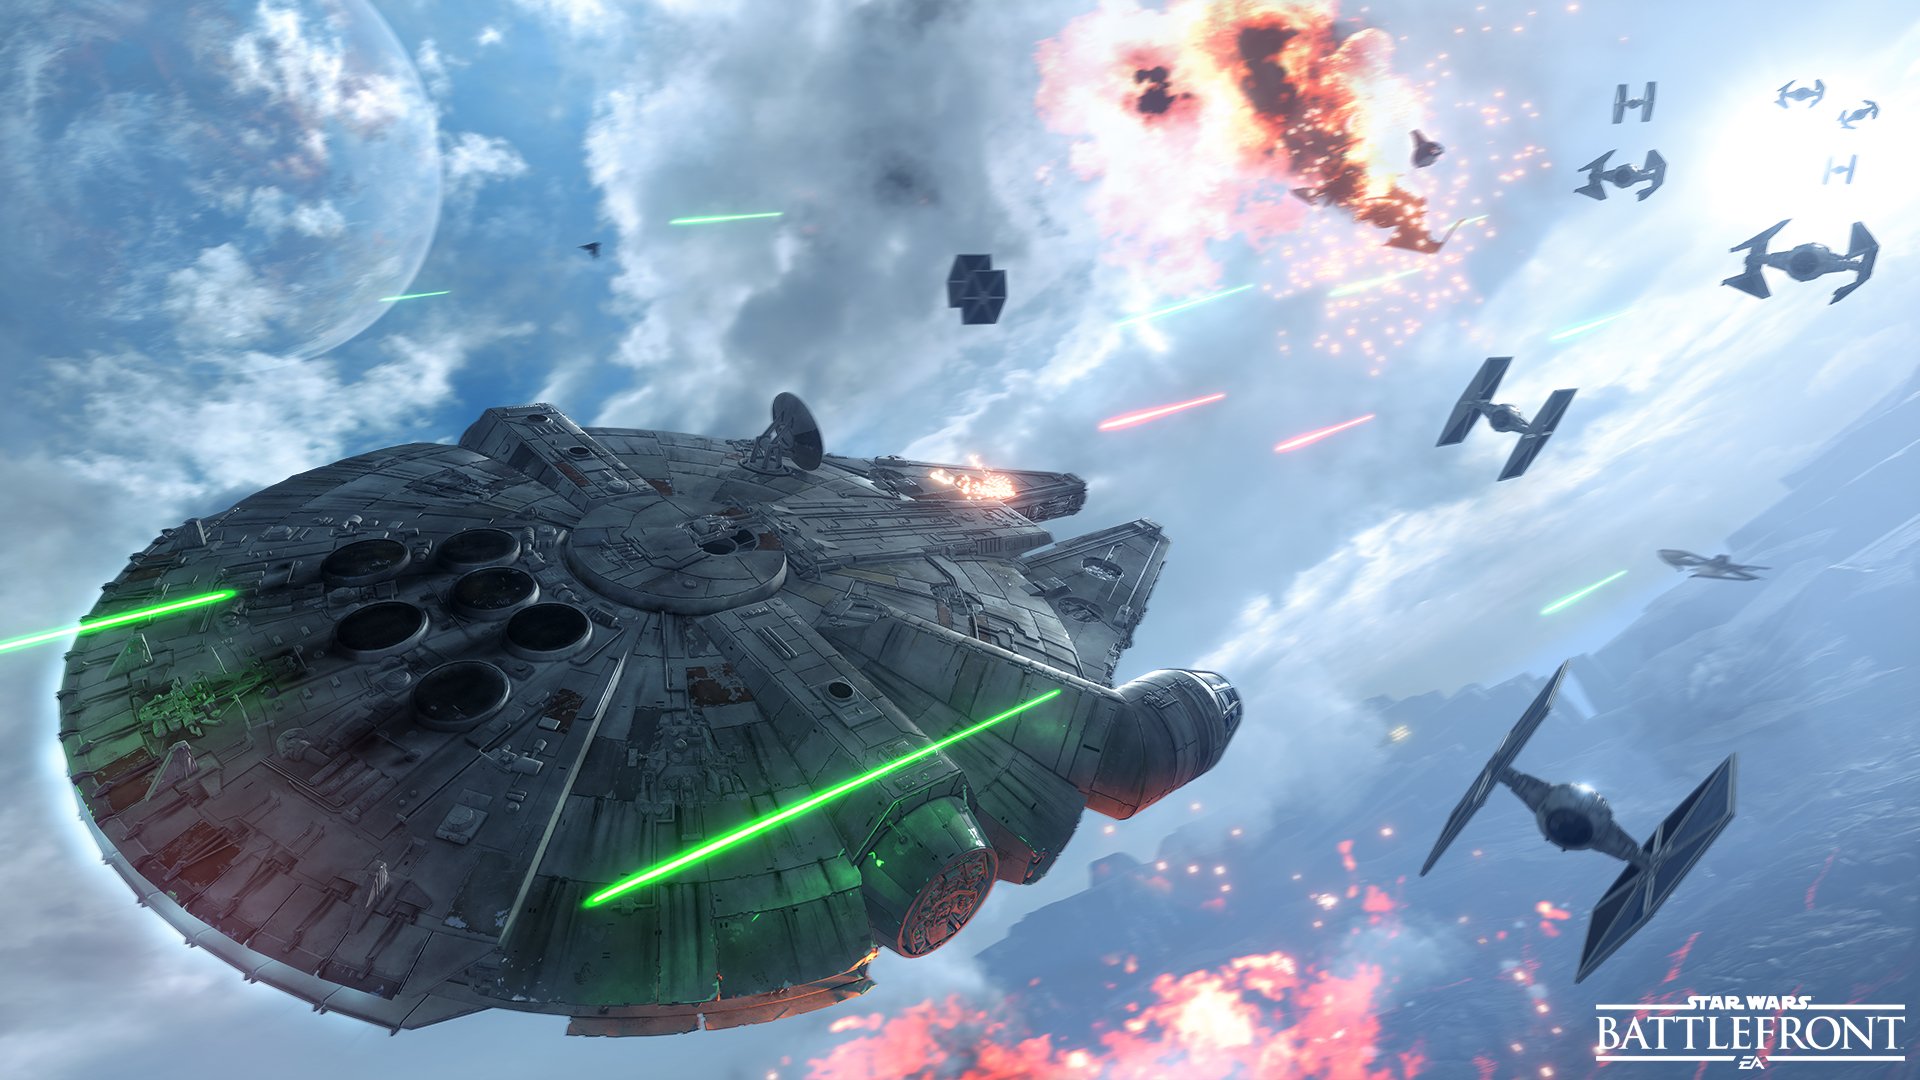 millennium falcon, star wars battlefront (2015), video game, star wars: battlefront, star wars